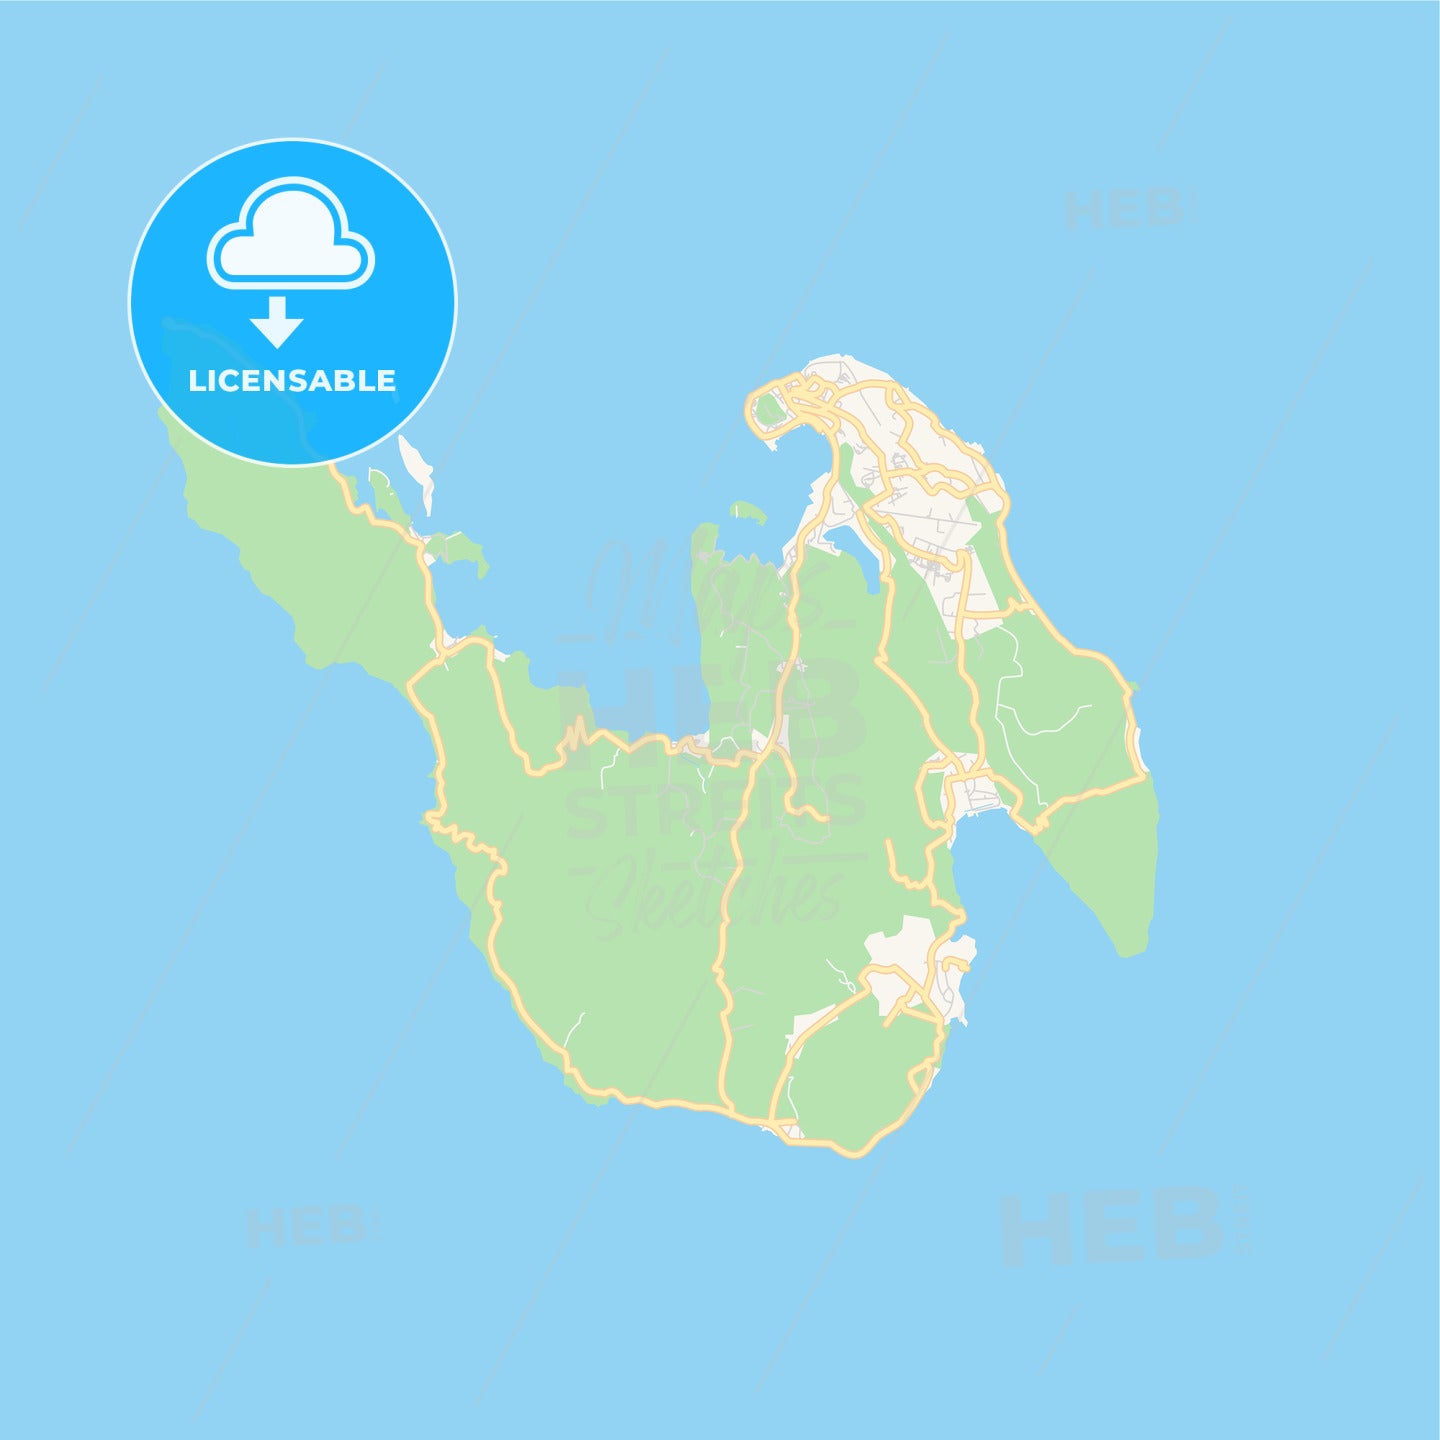 Printable street map of Sabang, Indonesia